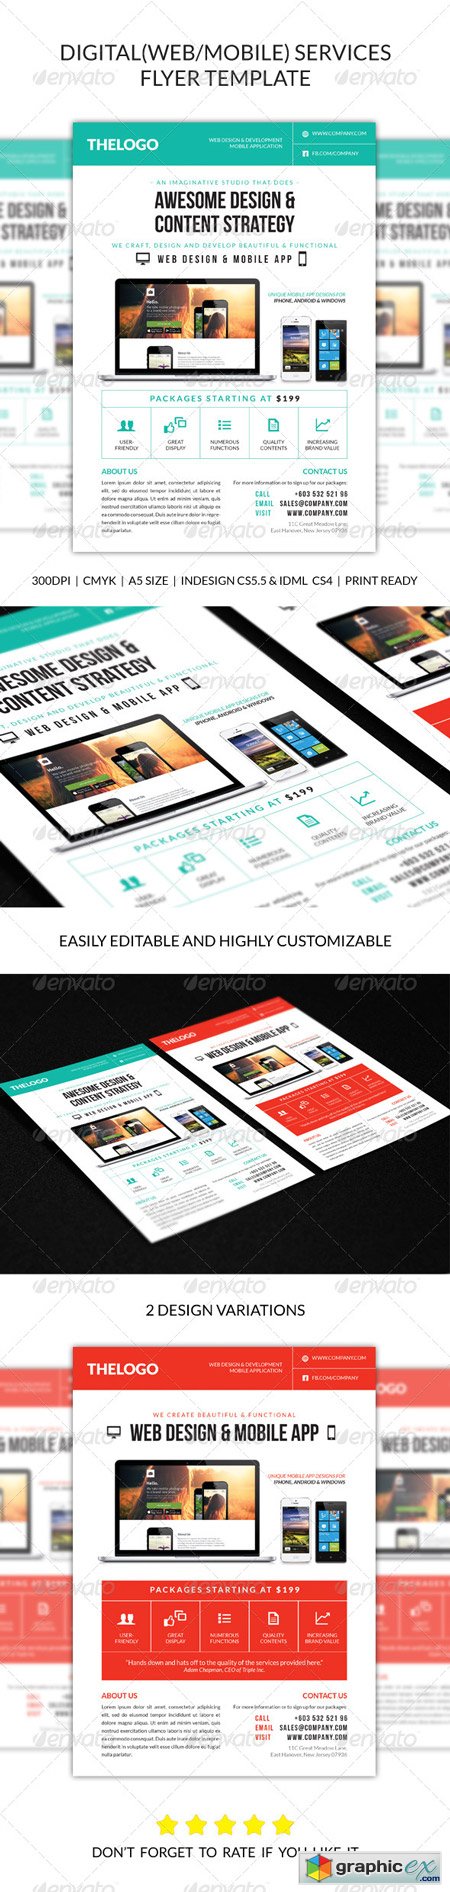 Digital Web Mobile Design Services Flyer